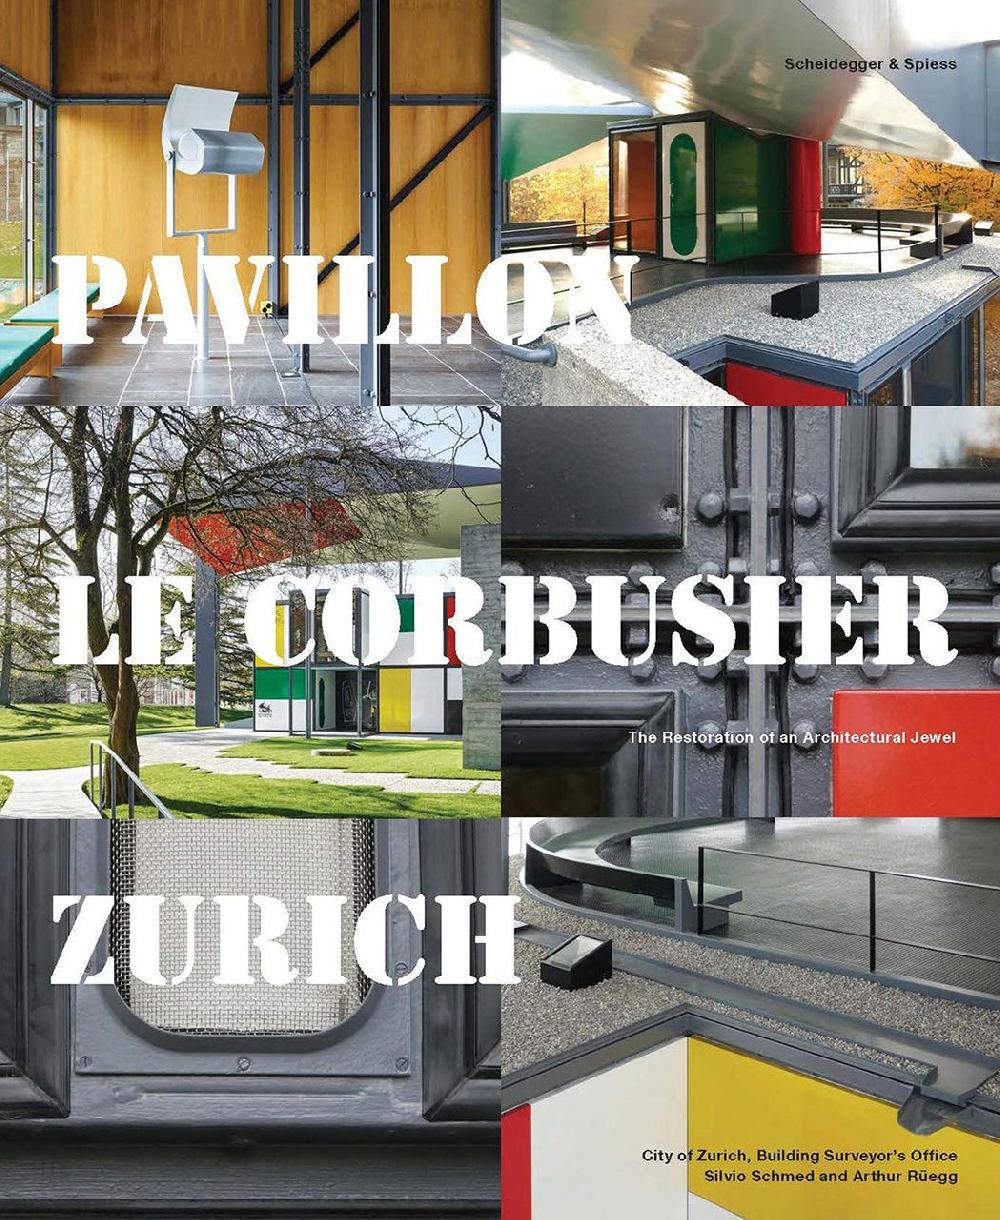 Pavillon Le Corbusier Zürich - The Restoration of an Architecture Jewel